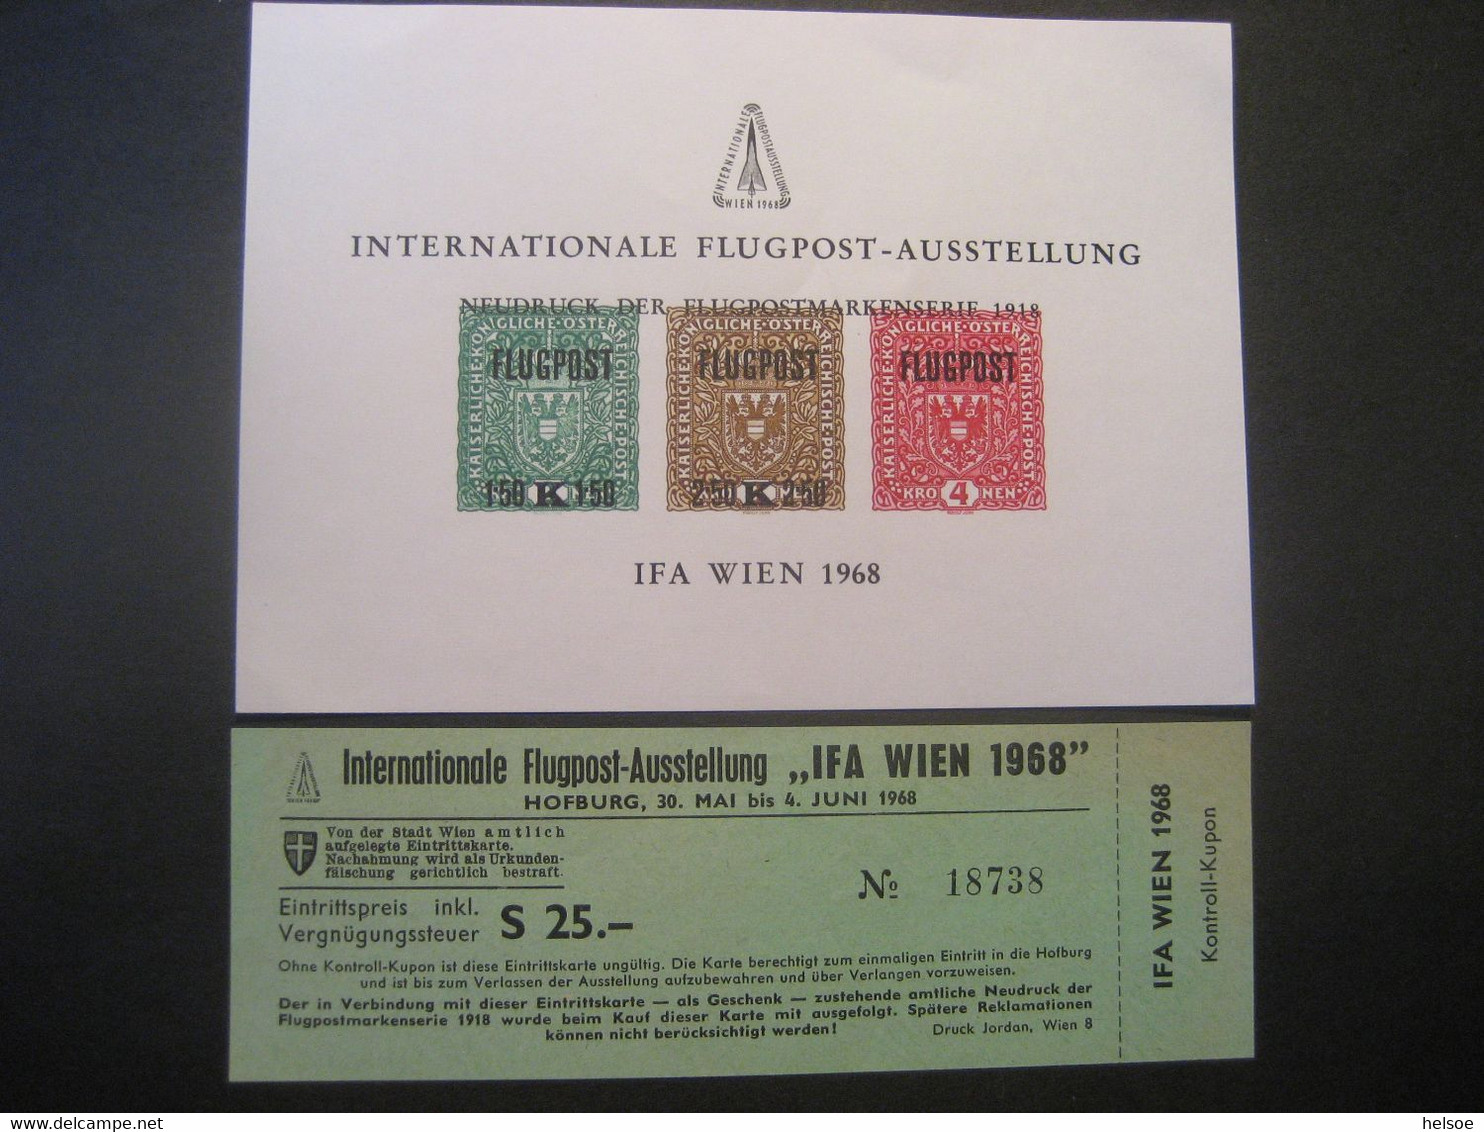 Österreich 1968- Internationale Flugpost-Ausstellung, IFA Wien Neudruckblock, Unbenutzte Eintrittskarte, ANK N7 - Proofs & Reprints